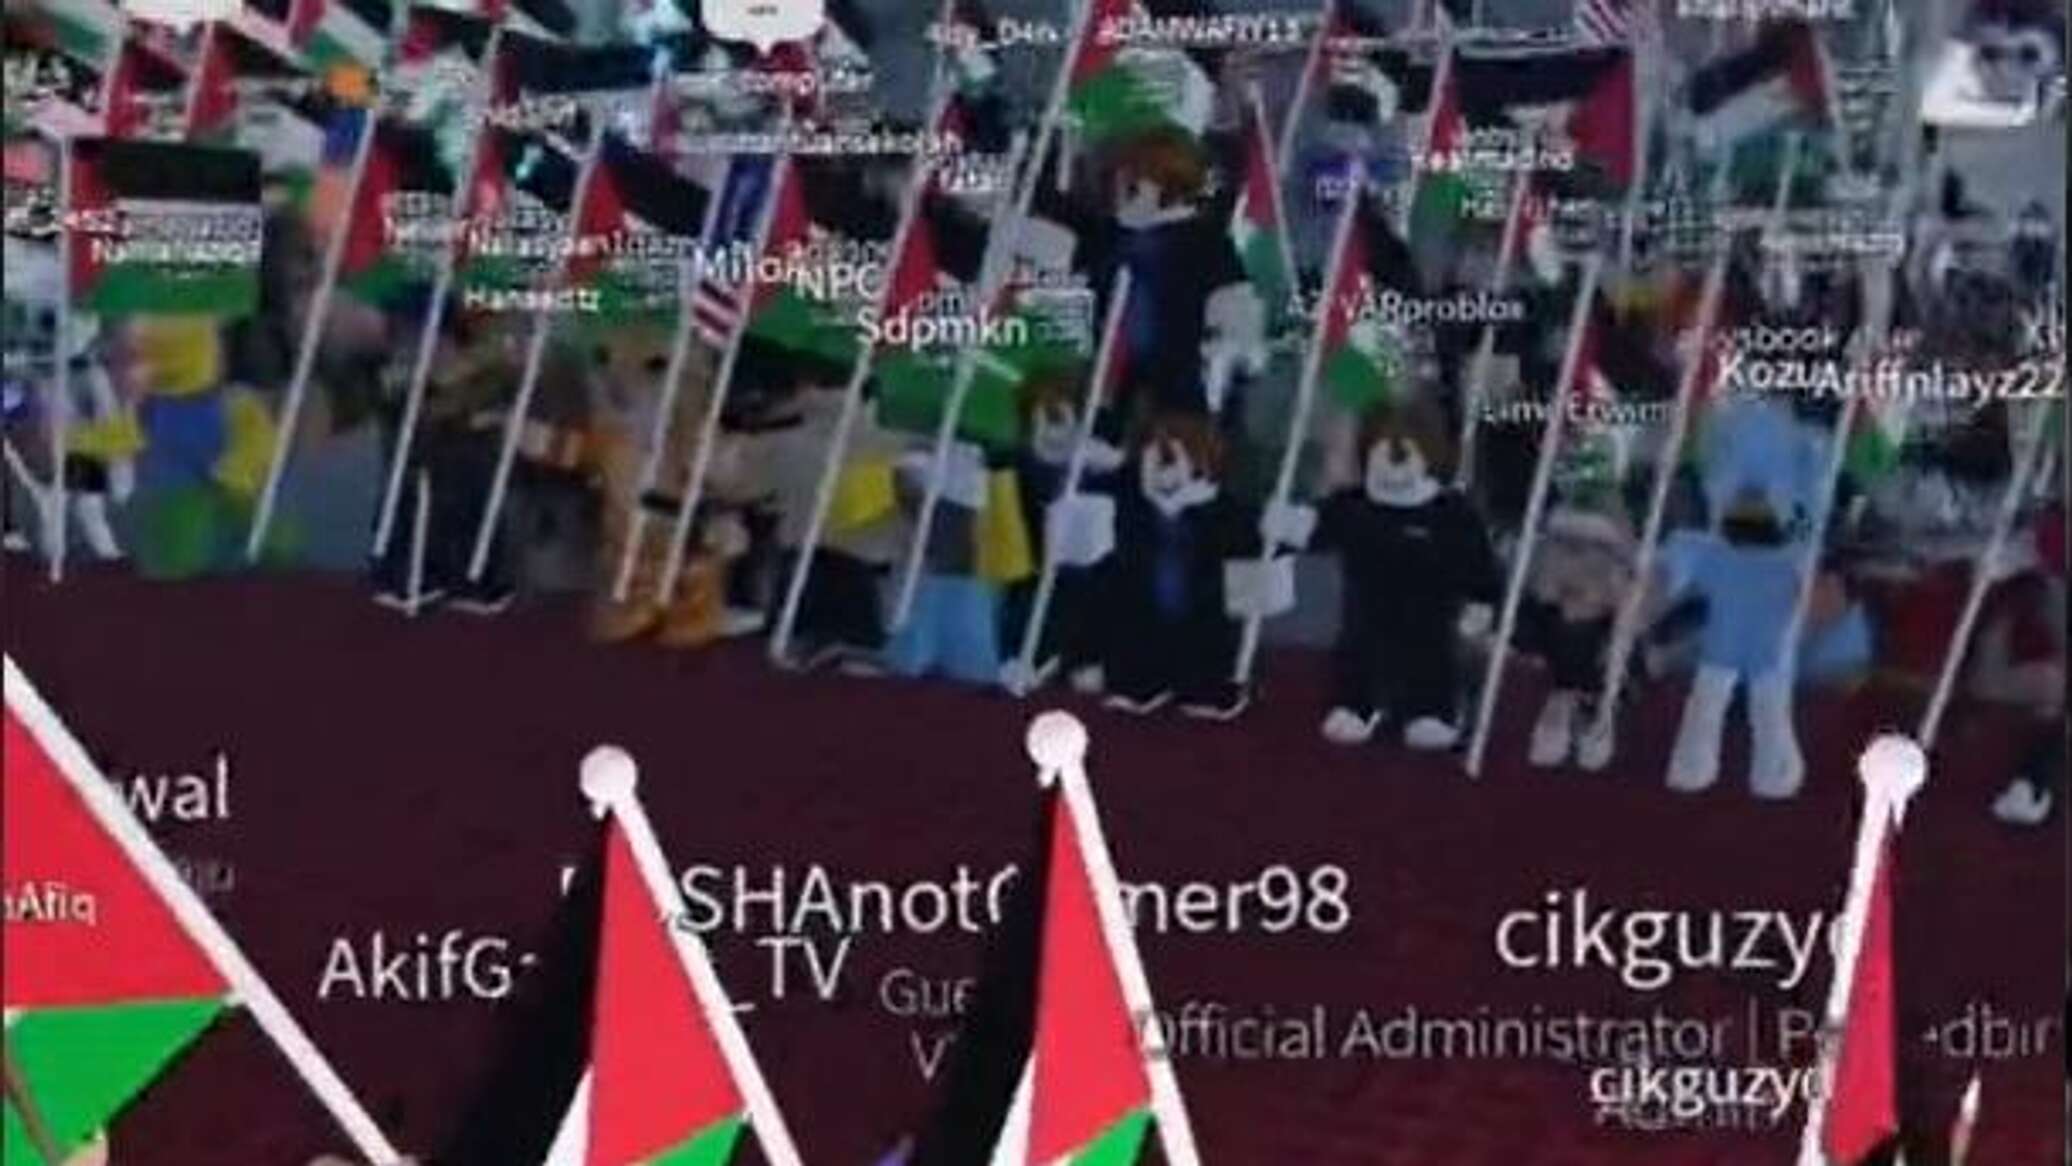 لاعبون رقميون ينظمون تظاهرة داعمة لفلسطين في سابقة هي الأولى من نوعها... فيديو